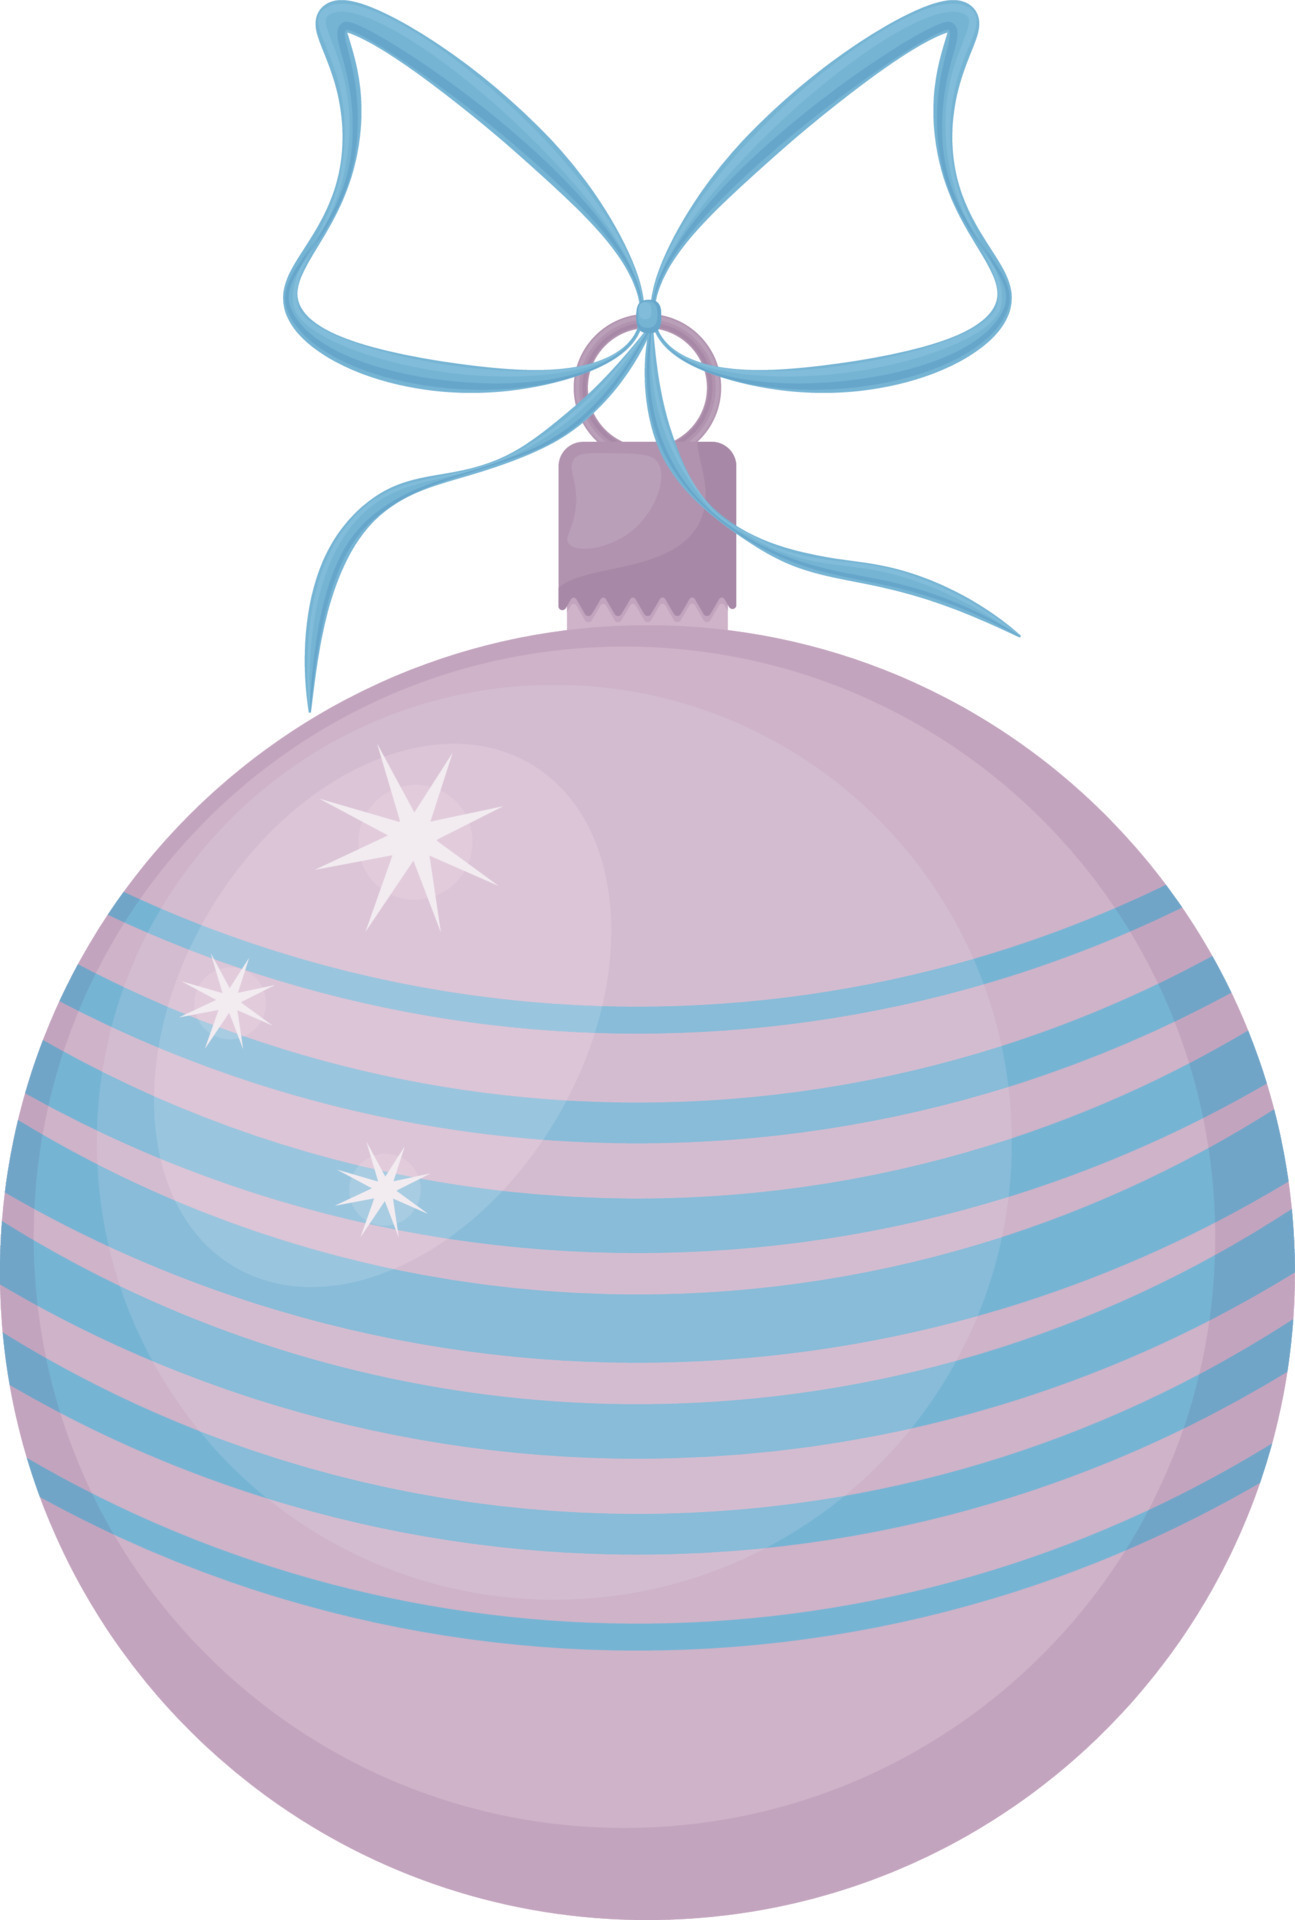 brinquedo da árvore de natal. uma bola grande e bonita para decorar uma  árvore de natal, rosa com azul. um brinquedo festivo de ano novo. um  acessório de ano novo. ilustrações vetoriais